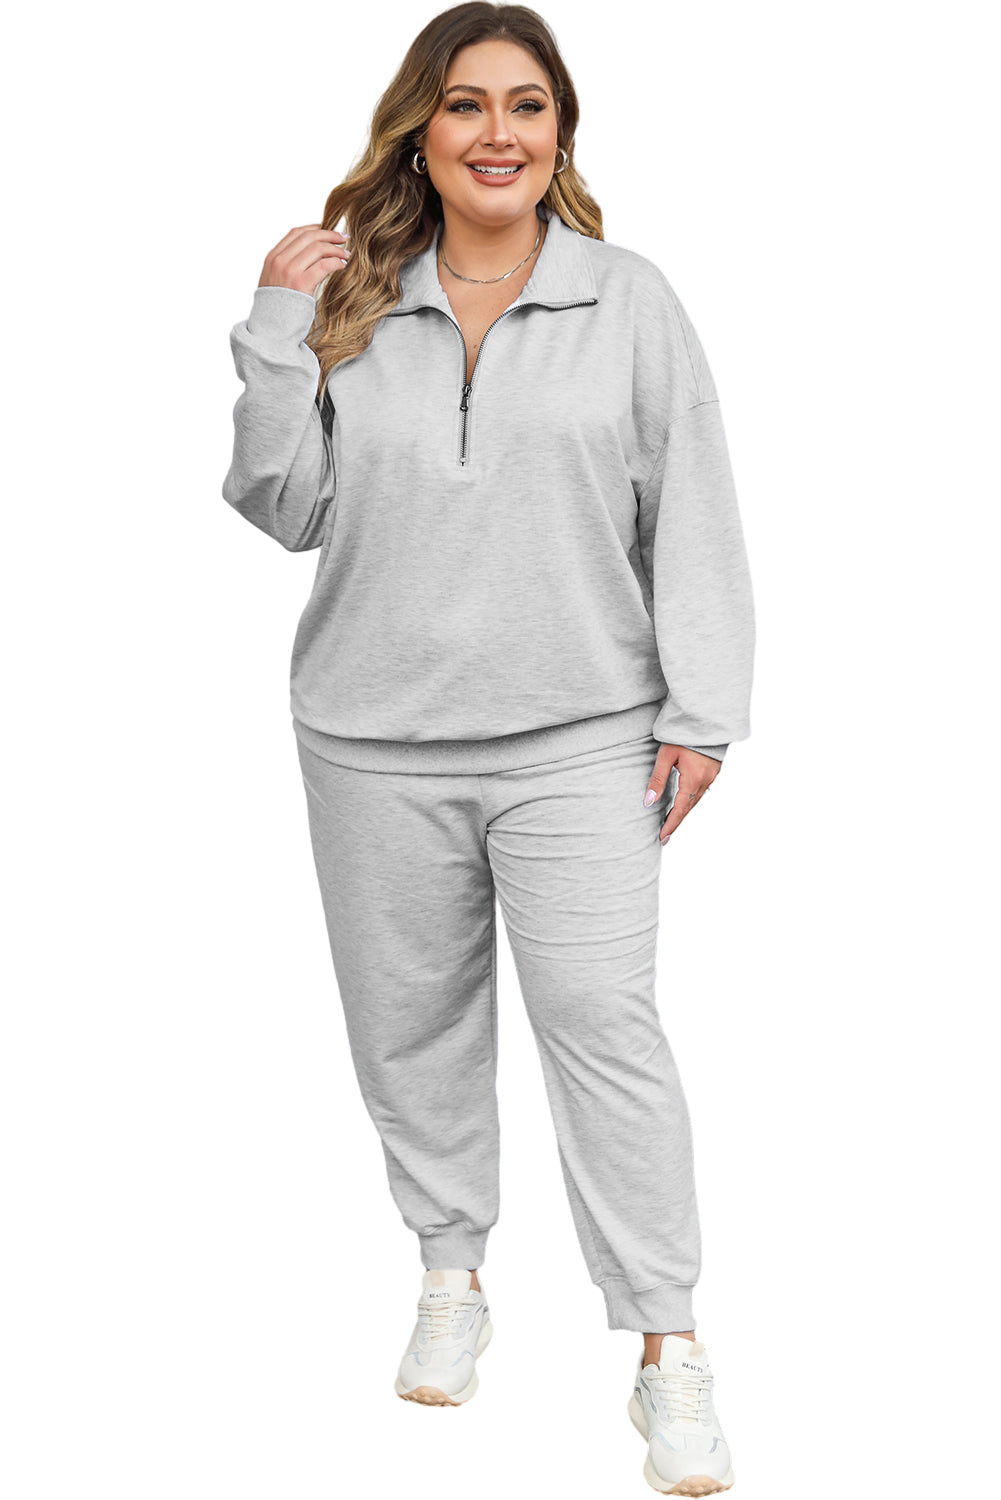 Comment porter un pull à fermeture éclair gris avec un pantalon de jogging grande taille